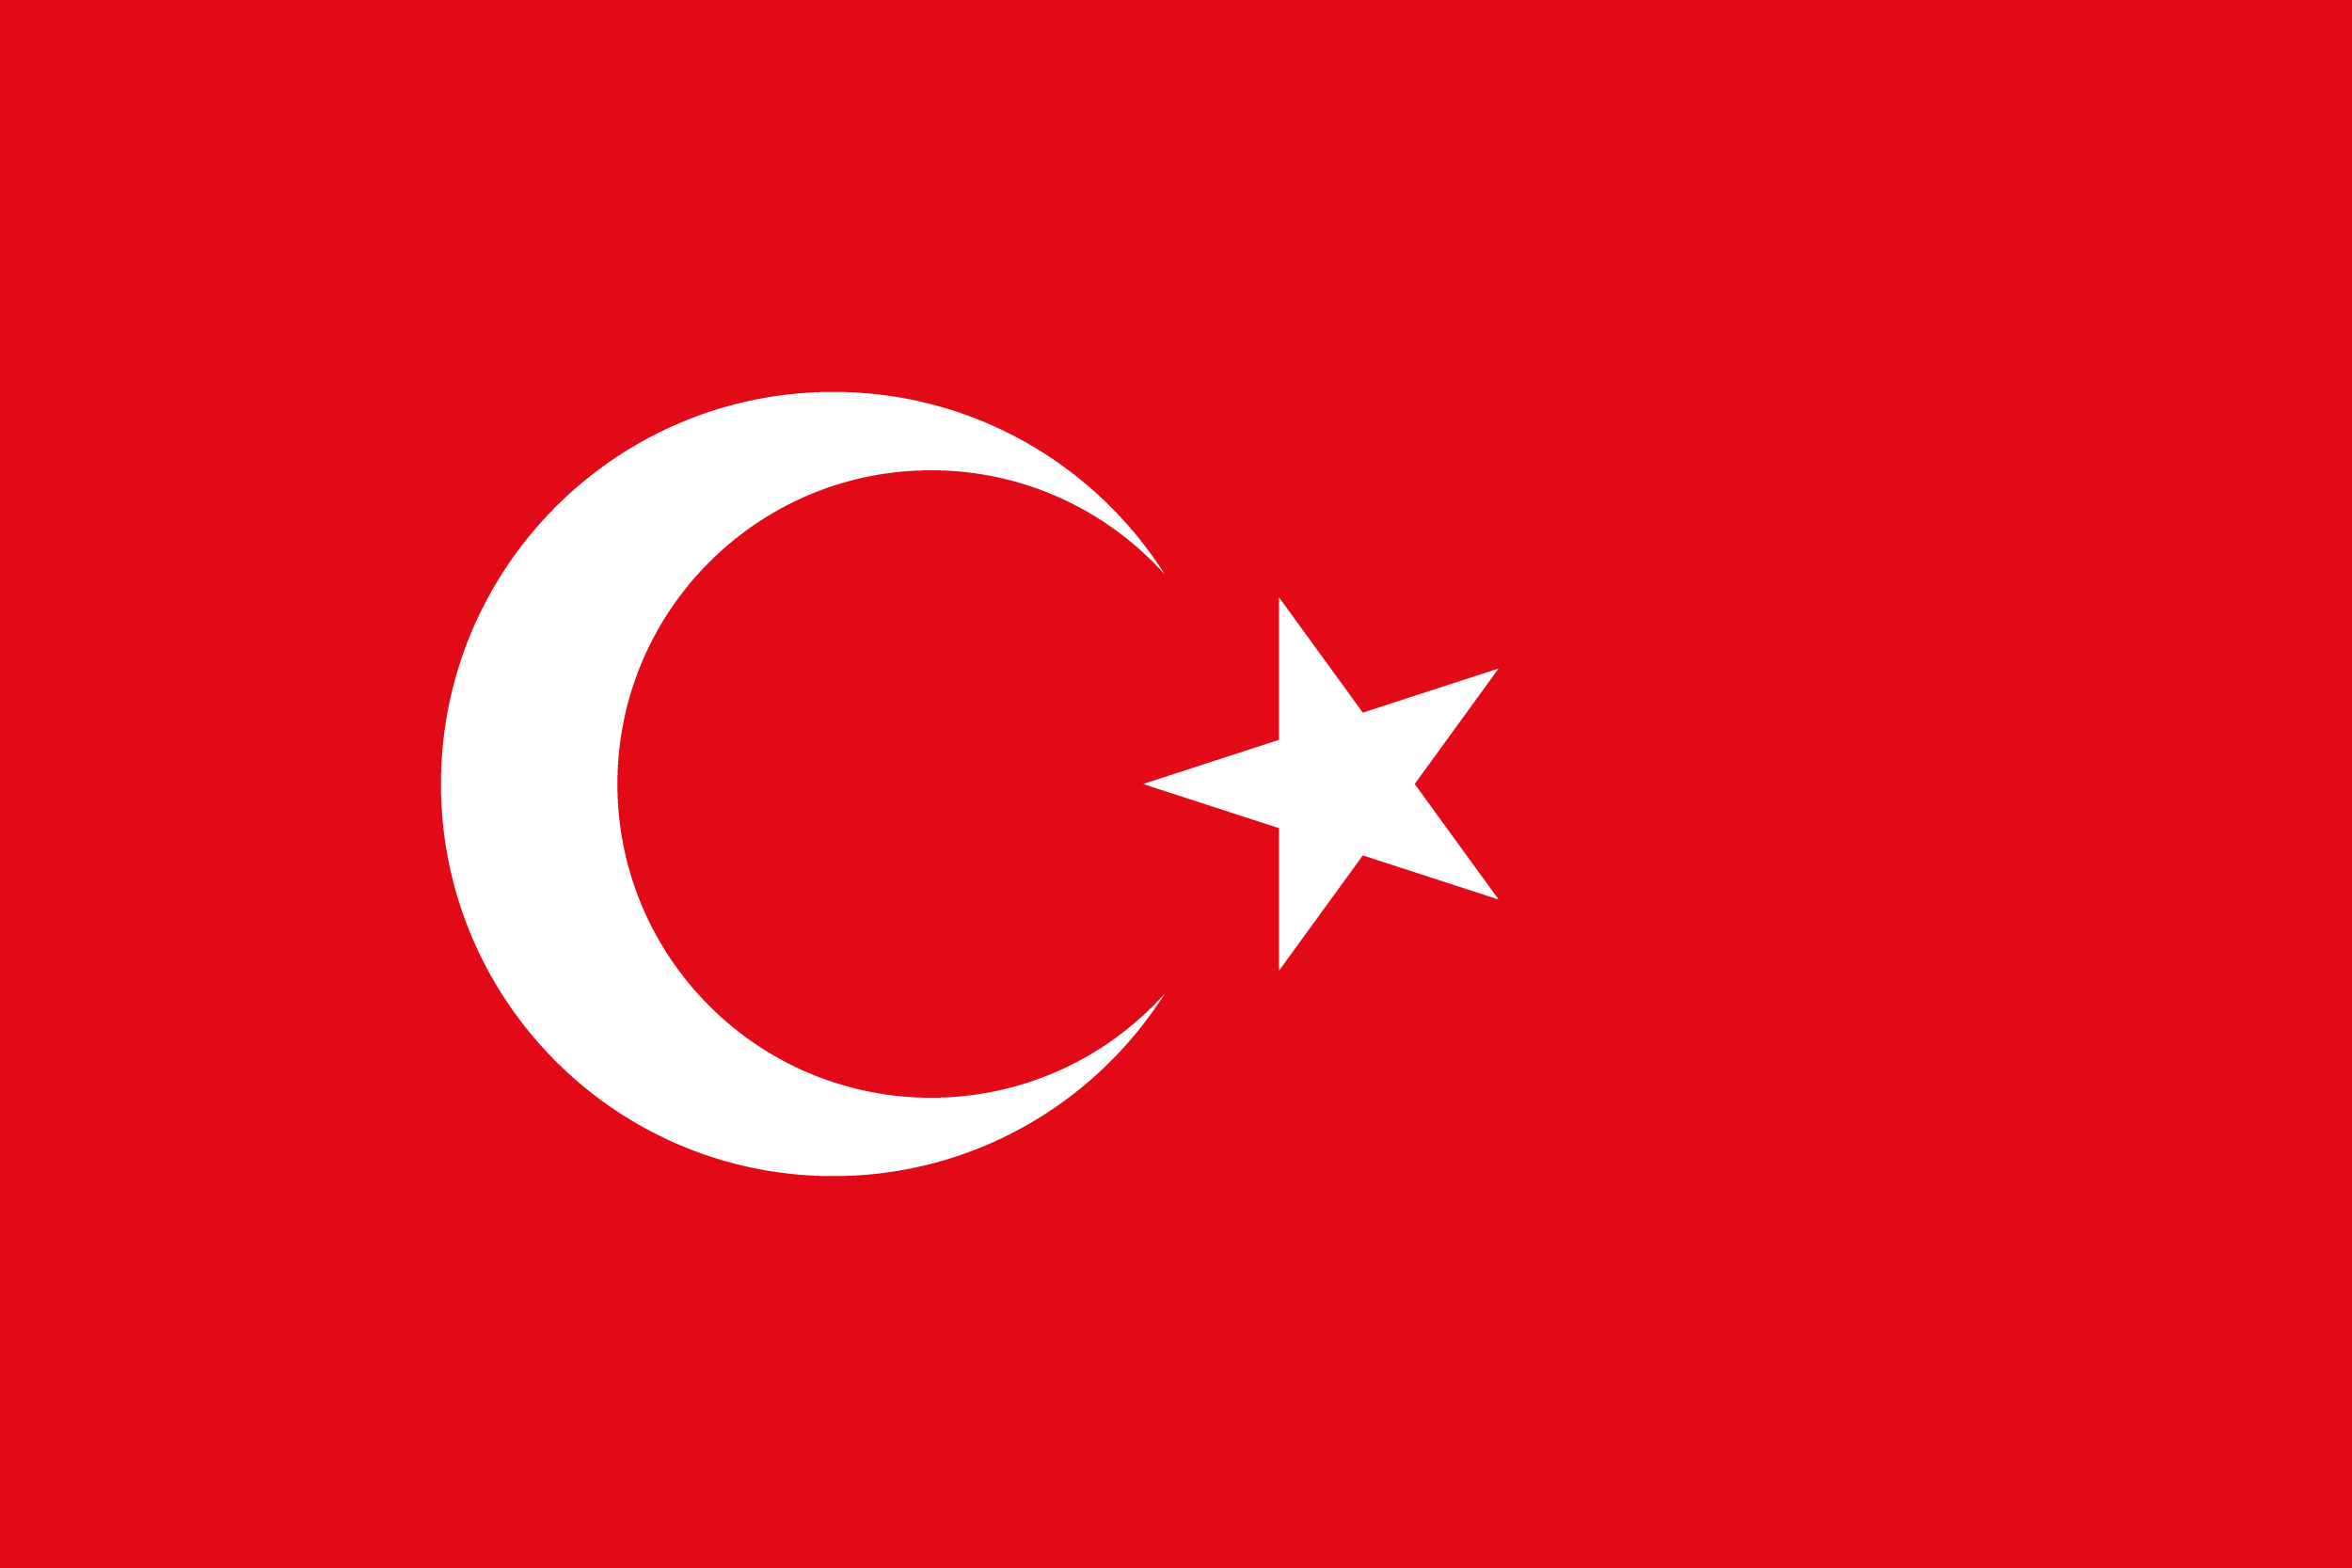 ユニーク トルコ 国旗 由来 100以上の最高の絵のゲーム